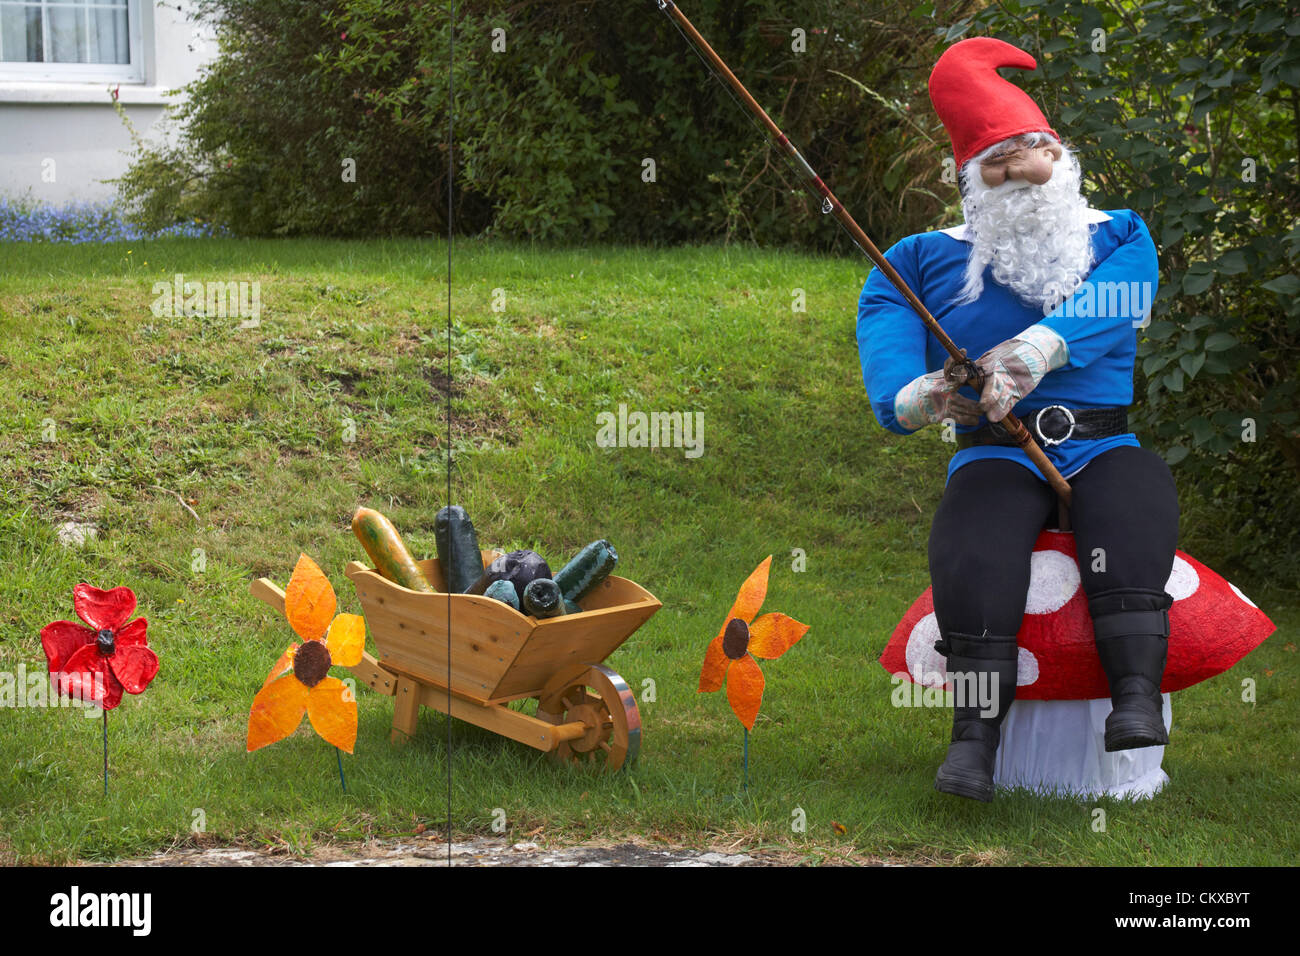 27. August 2012. Bisterne, New Forest National Park, Hampshire, UK. Bisterne Scarecrow Festival 2012. GNOME und Gärten. Bildnachweis: Carolyn Jenkins / Alamy Live News Stockfoto